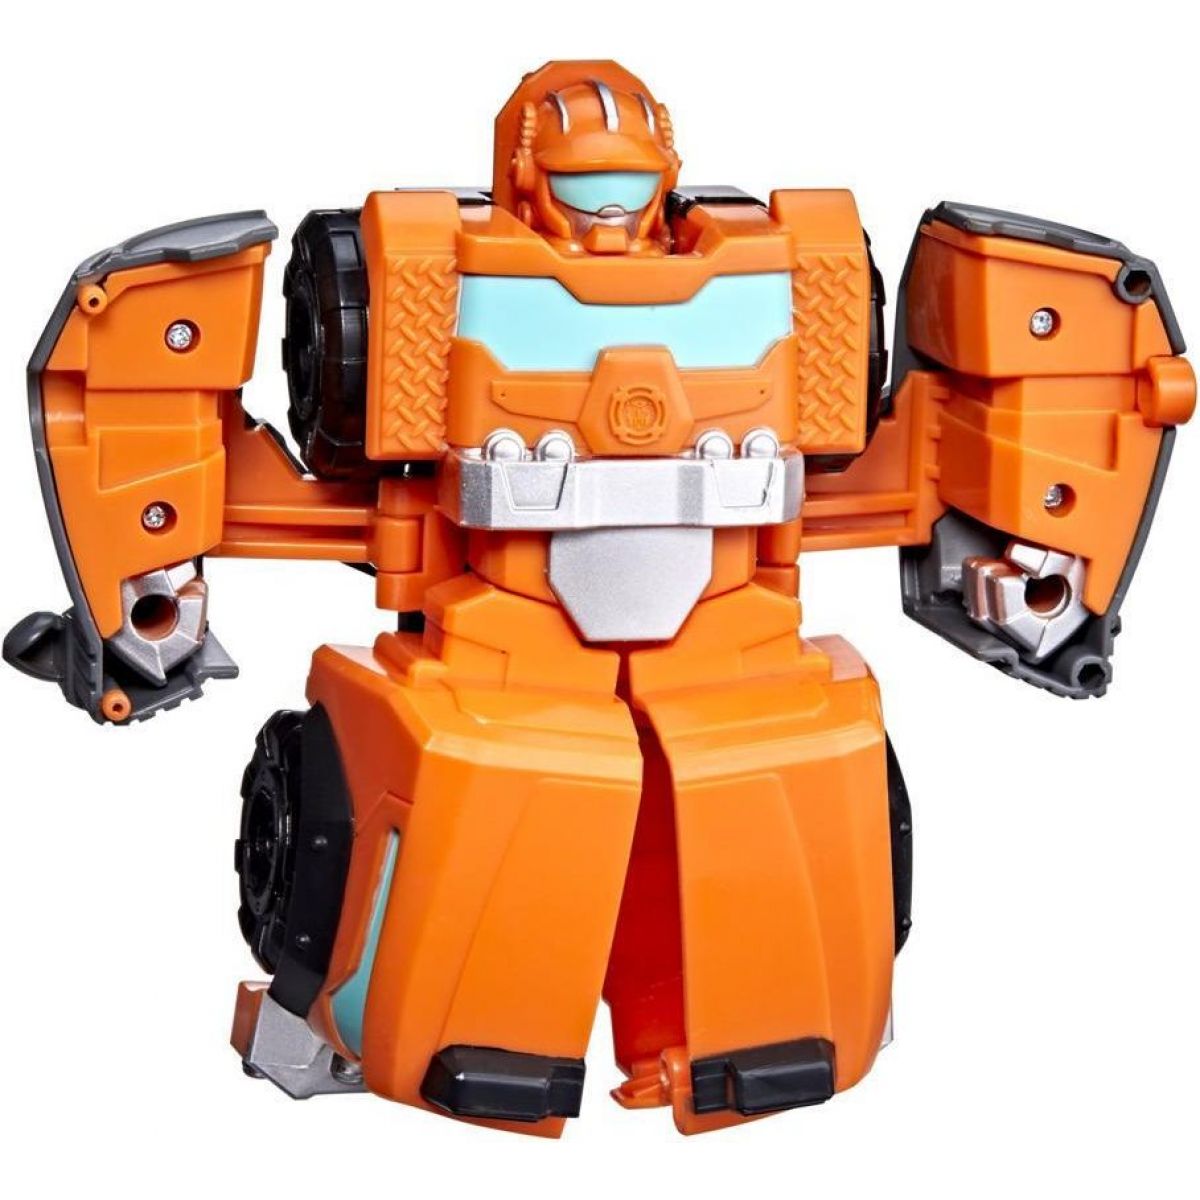 Hasbro Transformers Rescue Bots kolekce Rescan Wedge